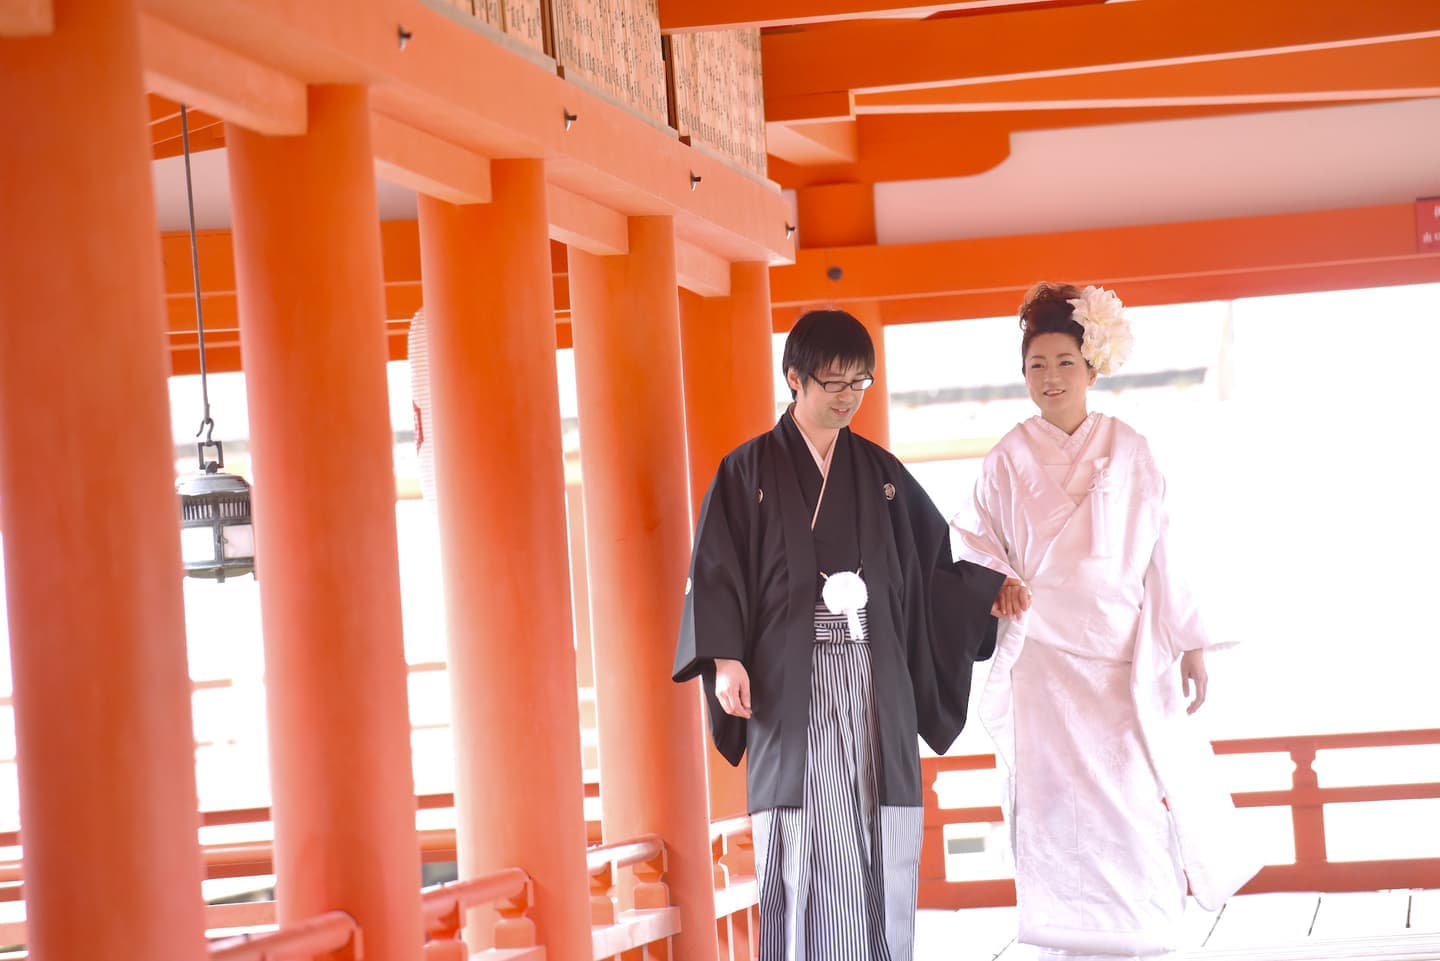 厳島神社で結婚式の新郎と花嫁さん